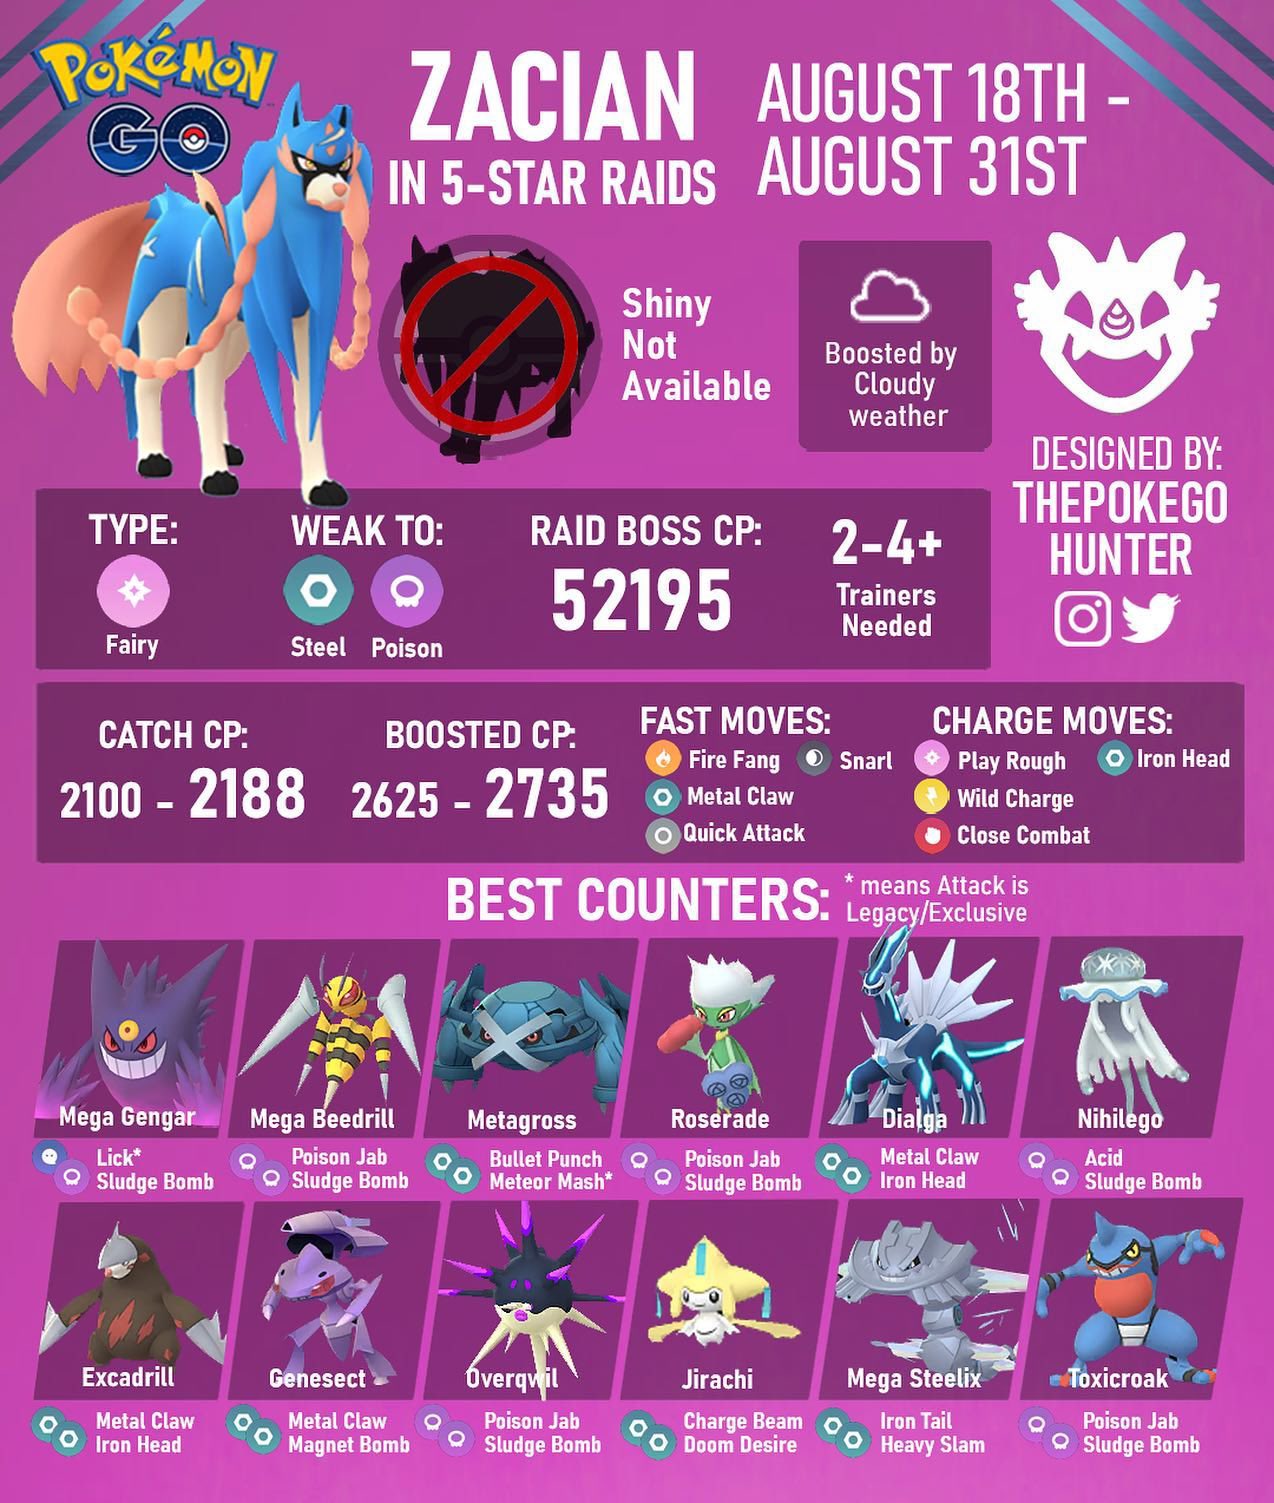 Pokémon GO: Zamazenta Five Star Raid Guide (Best Counters